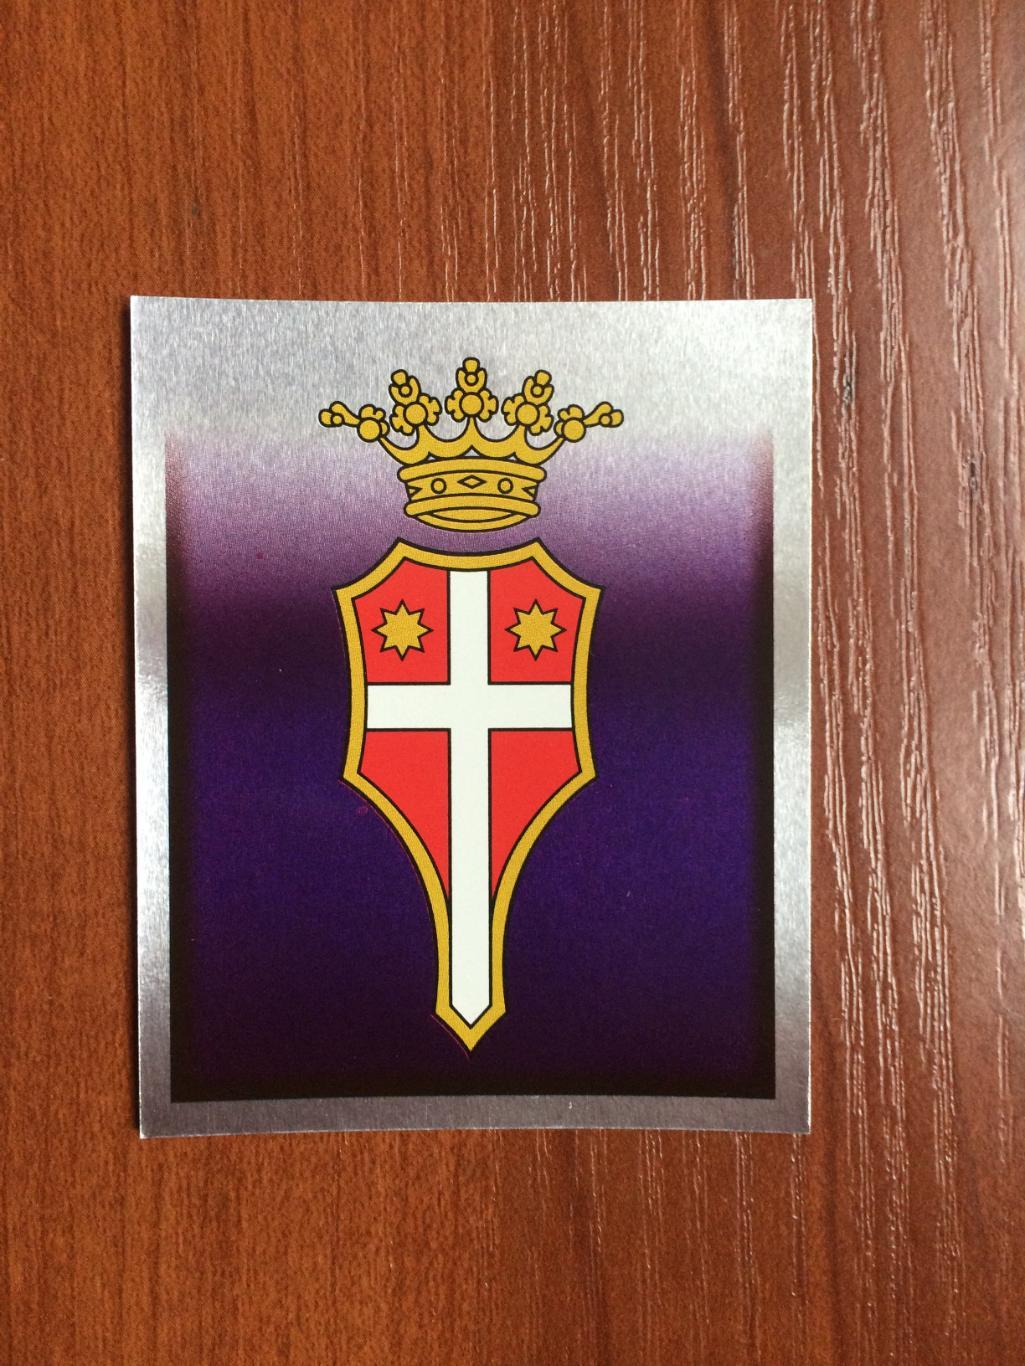 Наклейка MERLIN Итальянский Футбол 1997-1998 Treviso emblem № 553